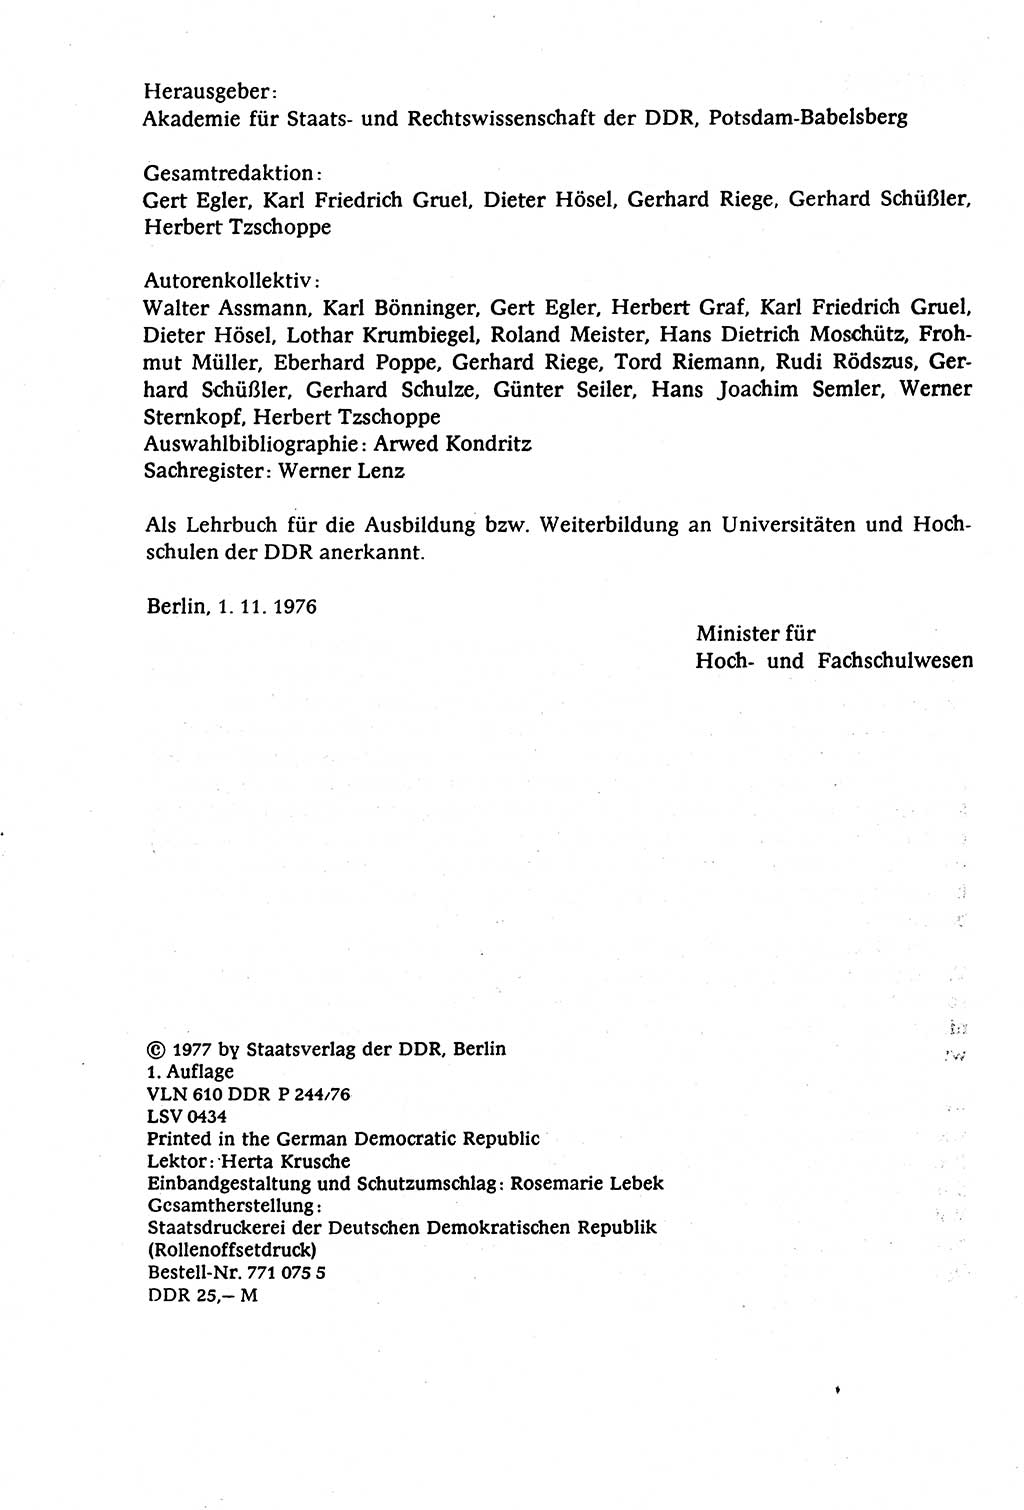 Staatsrecht der DDR (Deutsche Demokratische Republik), Lehrbuch 1977, Seite 4 (St.-R. DDR Lb. 1977, S. 4)